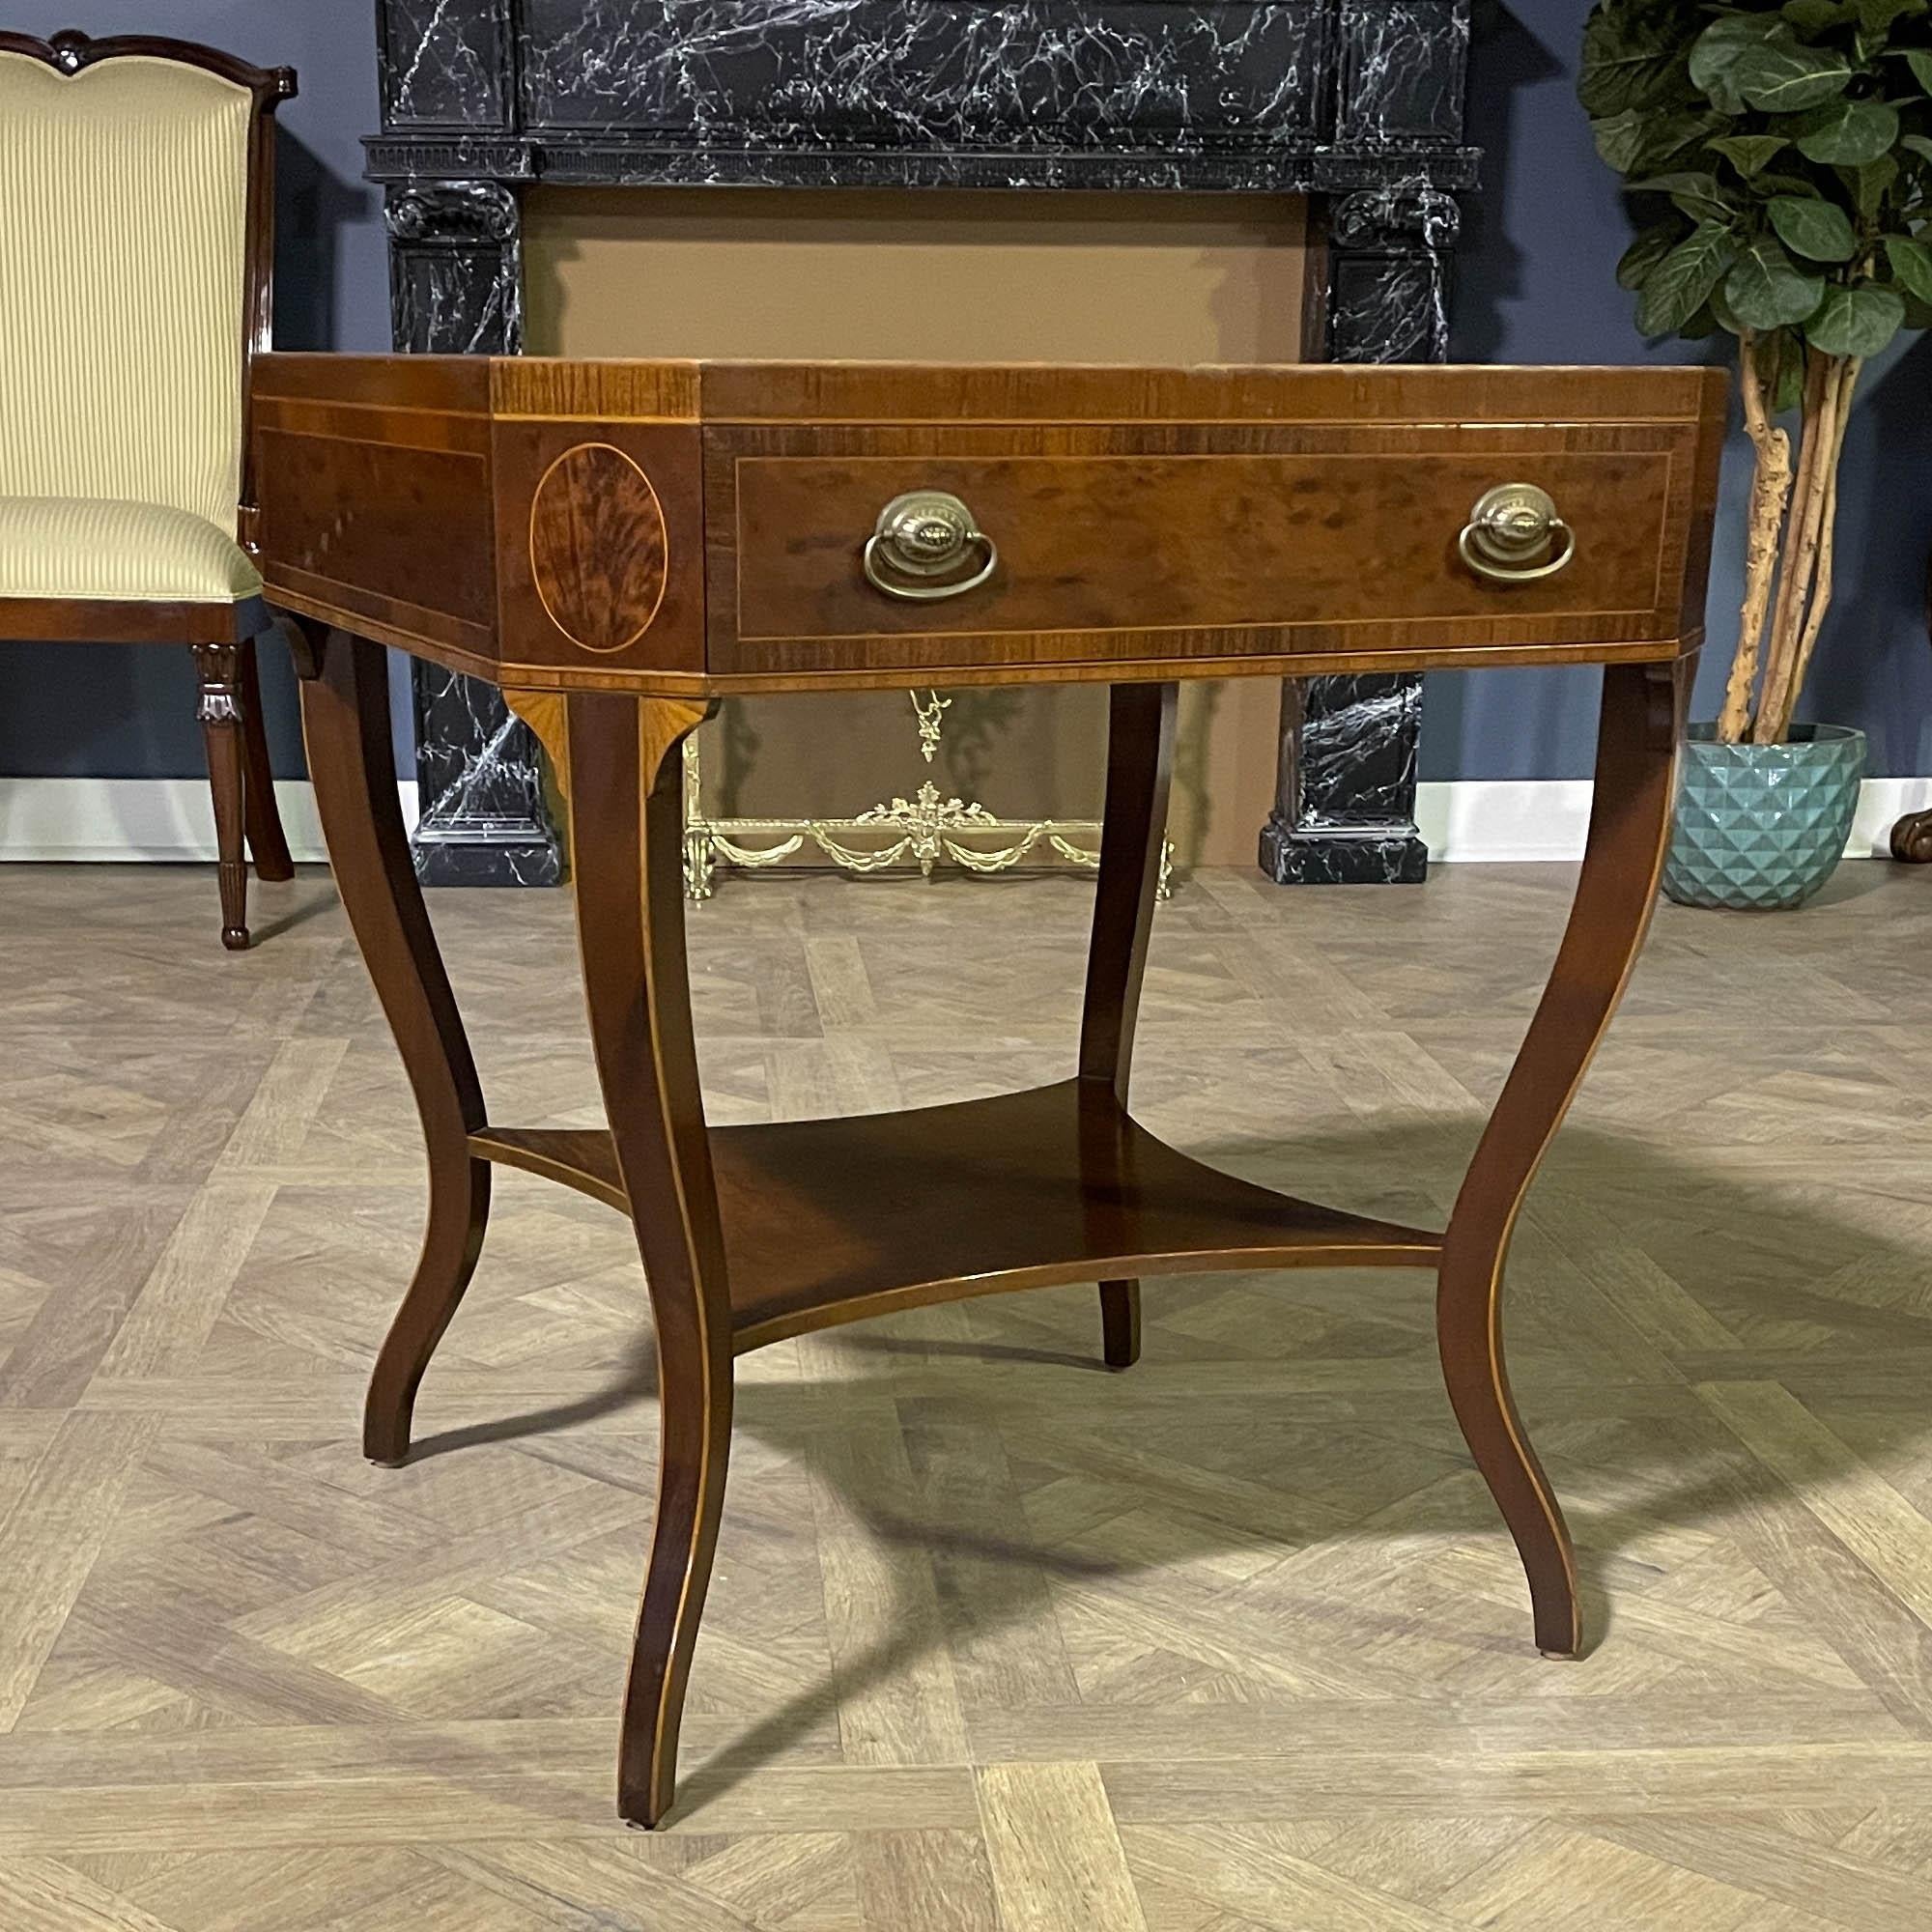 De Niagara Furniture, une table d'appoint Vintage Schmieg et Kotzian en excellent état. La partie supérieure de la pièce a été récemment restaurée pour retrouver son éclat d'origine.

À la fois élégante et incroyablement détaillée, cette magnifique